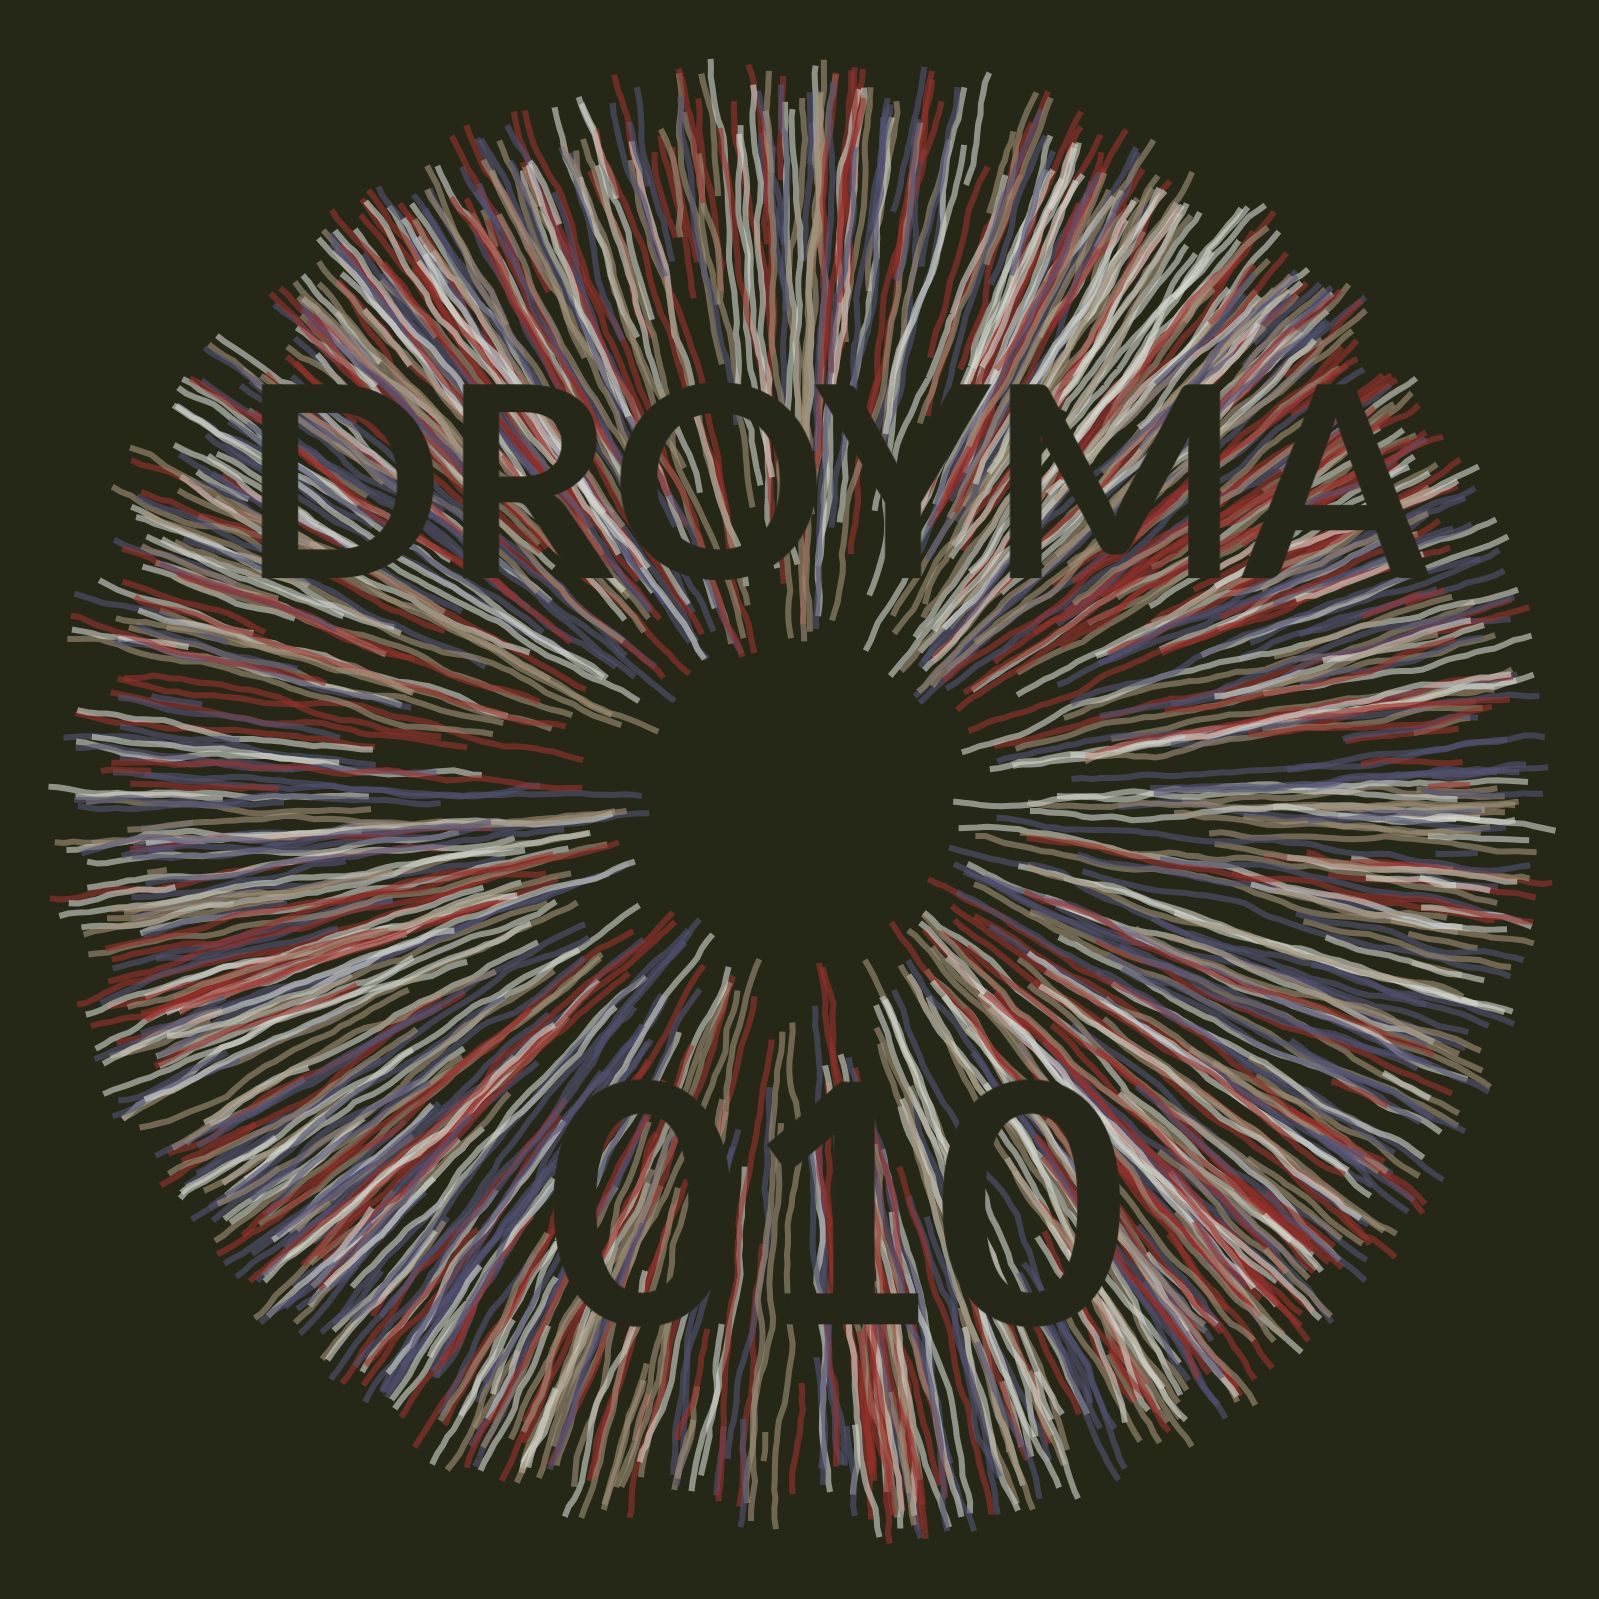 Descarregar Droyma Mix 010 - April 2019